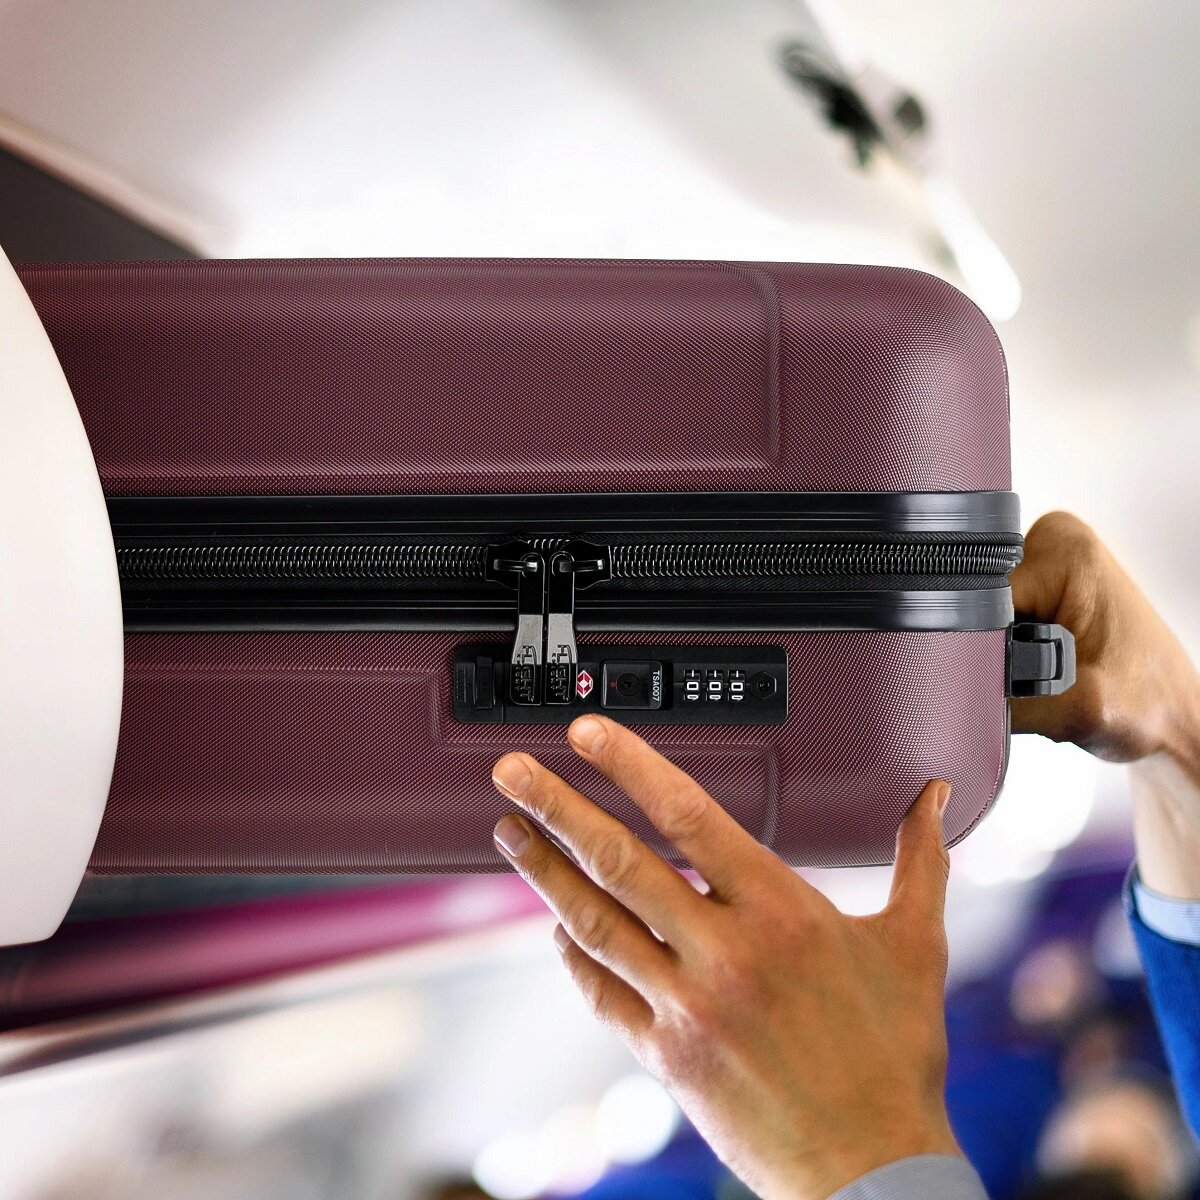 Walizka Anpa duża bordowa wkładanie torby do miejsca na bagaż w samolocie nad fotelem